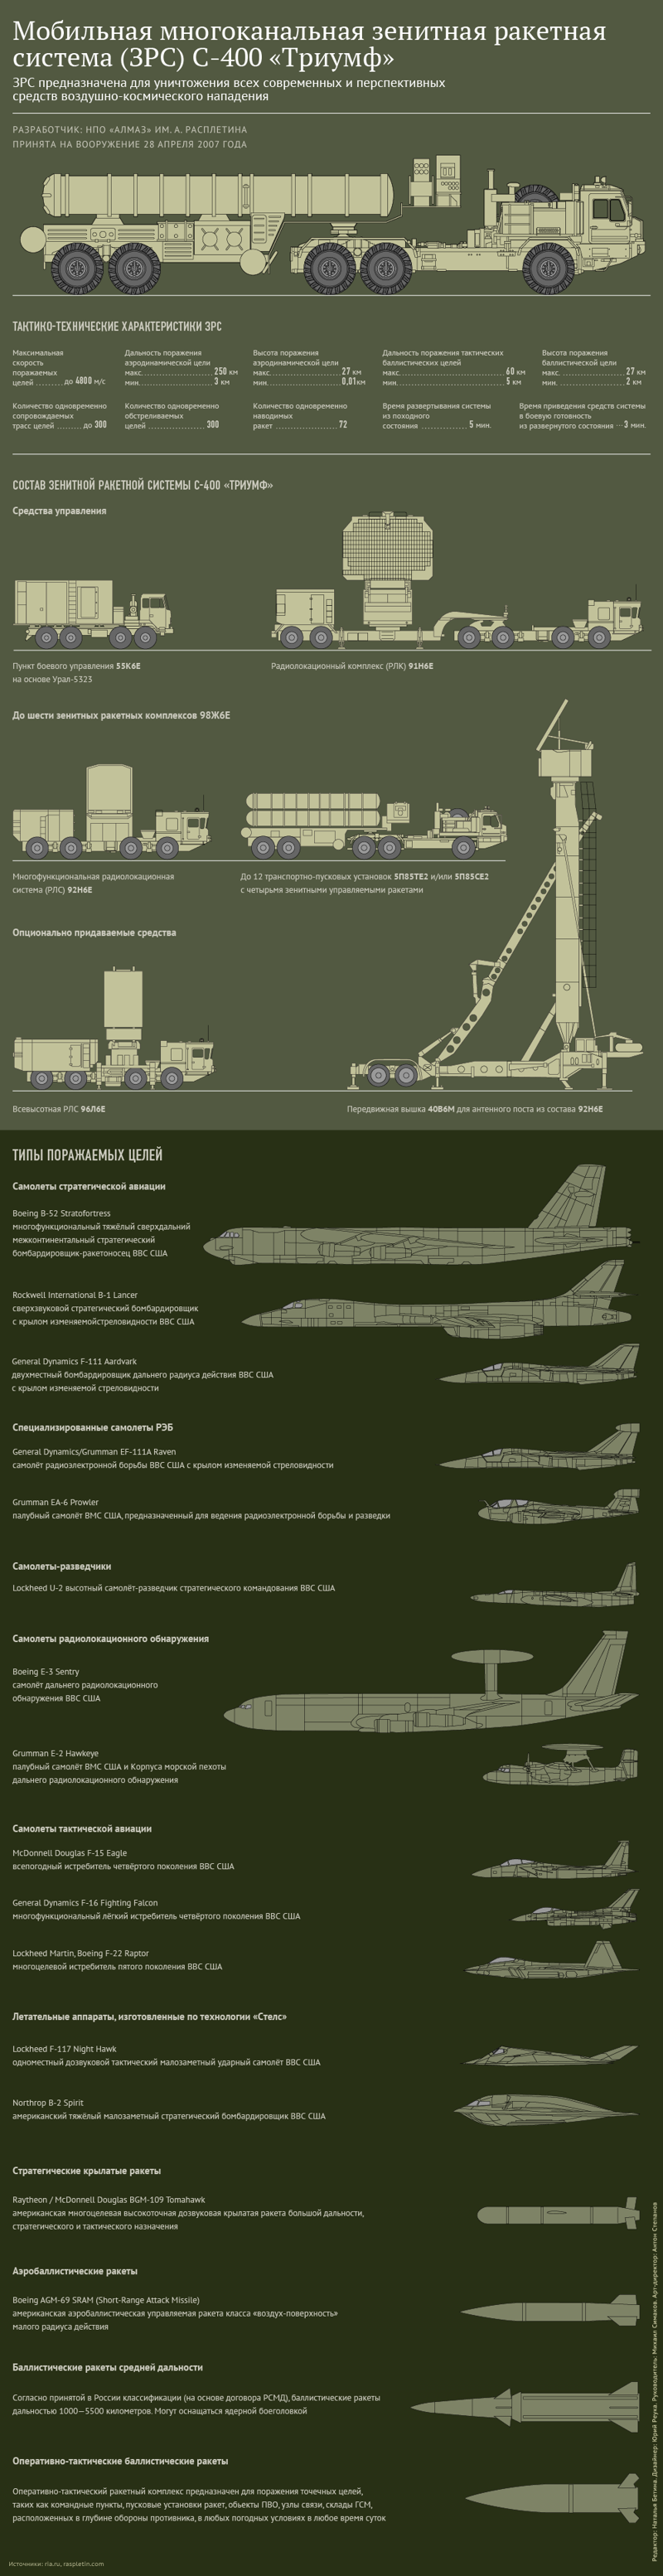 Немецкие СМИ рассказали, почему российские С-400 покупает "весь мир"